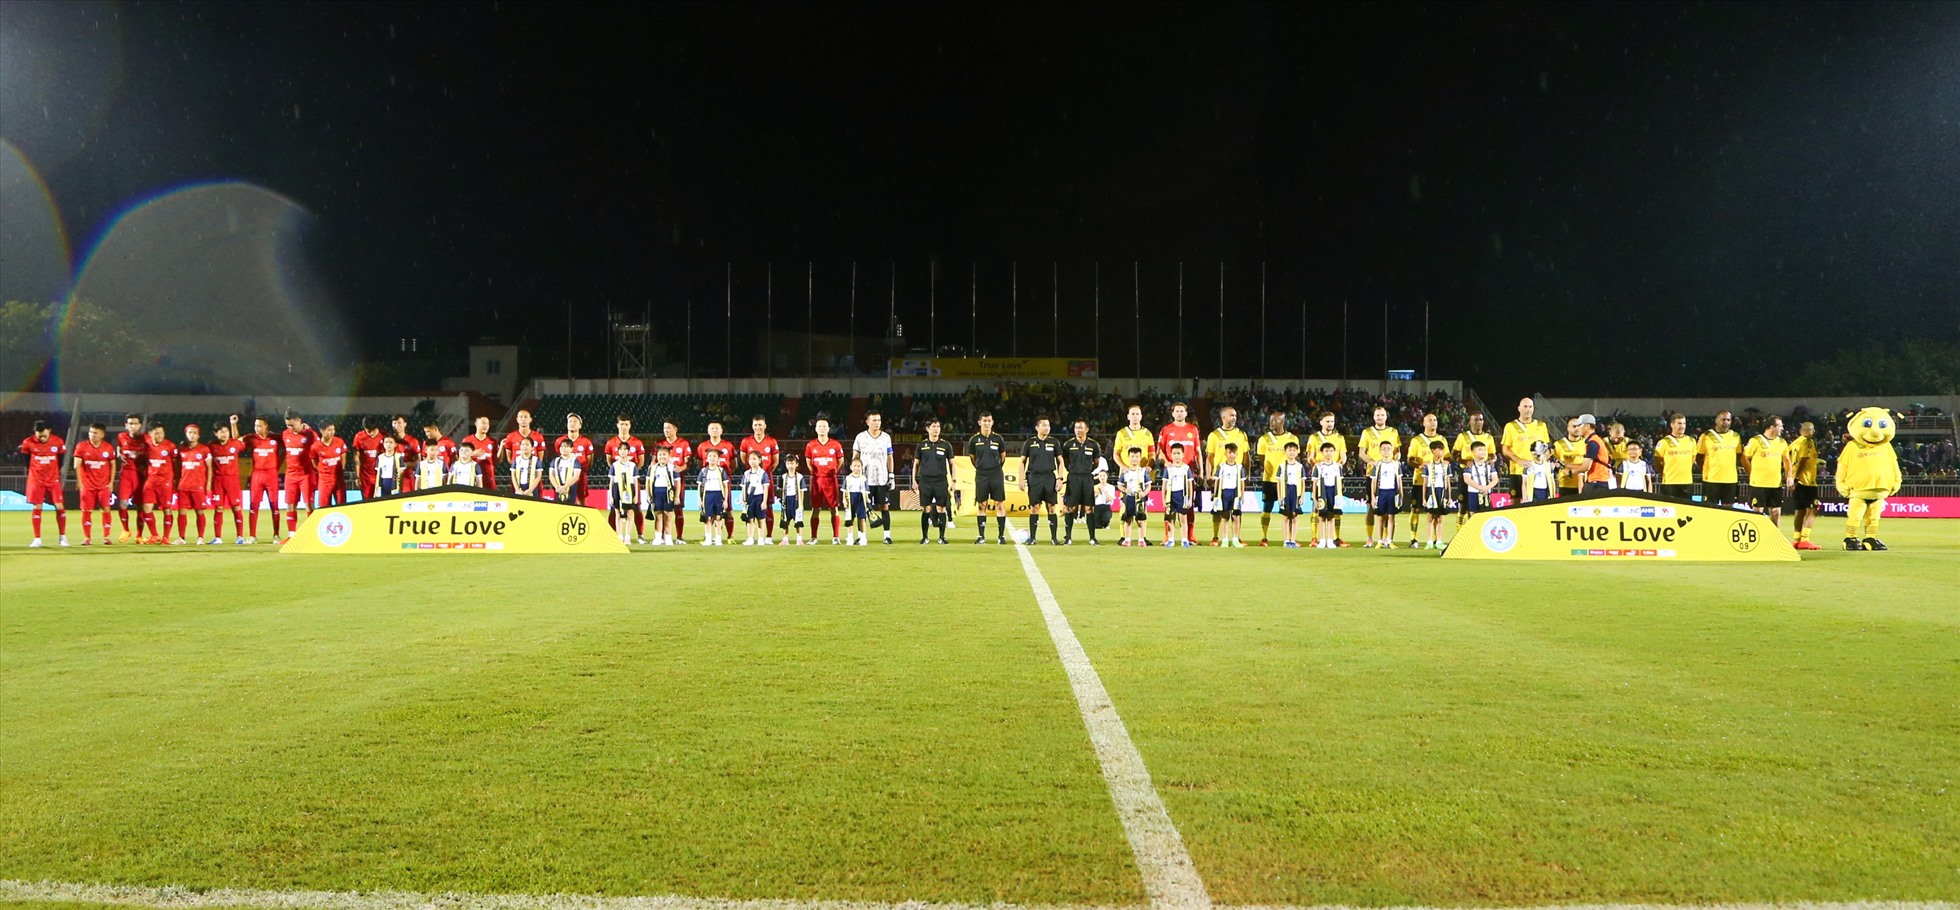 Tâm điểm của chương trình thiện nguyện True Love trên sân Thống Nhất tối 28.9 là trận giao hữu giữa All Stars Việt Nam đối đầu với các cựu danh thủ của câu lạc bộ Borussia Dortmund.